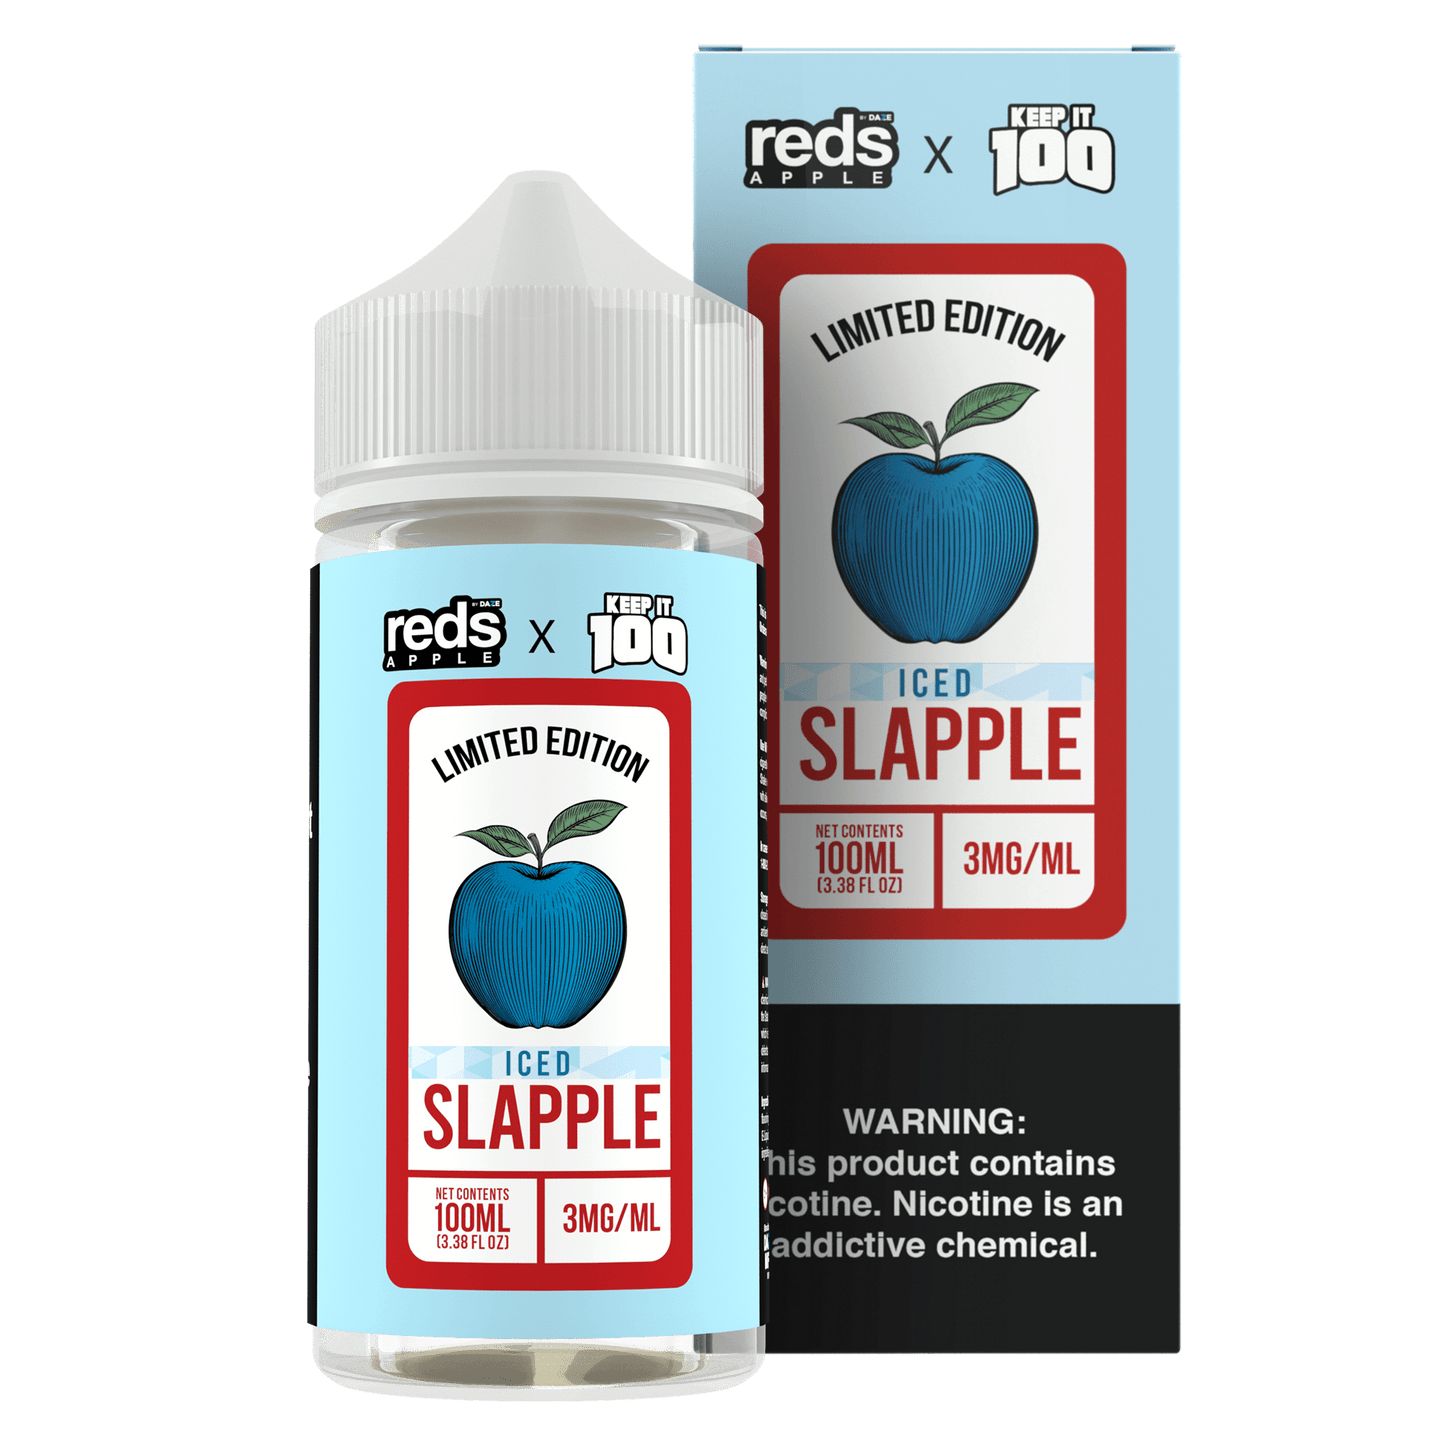 Slapple ICED - Red's Apple E-Juice x Keep It 100 - 100mL